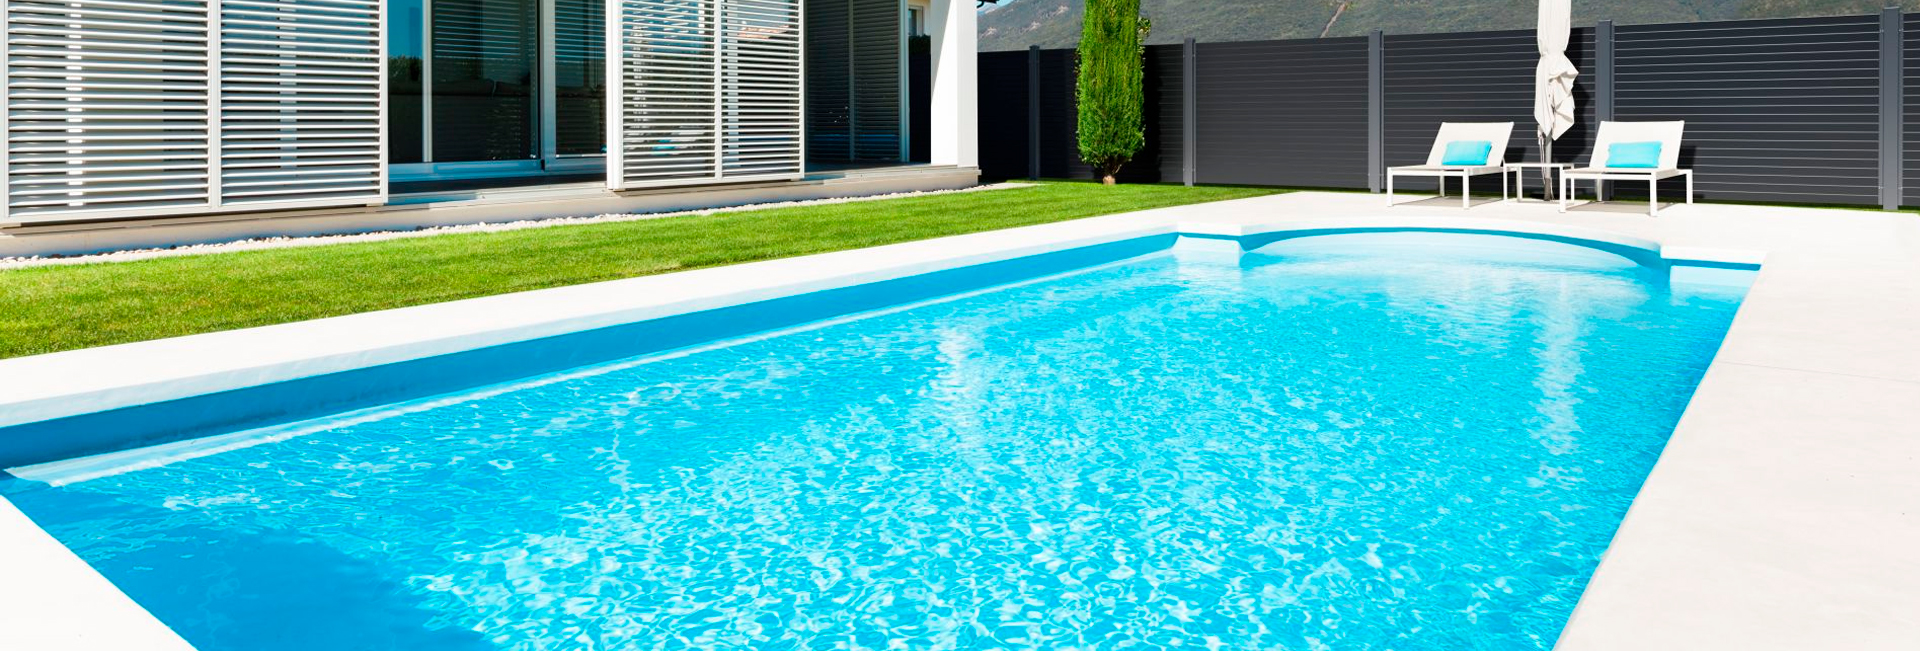 ¿Qué es mejor piscina de fibra o de material?